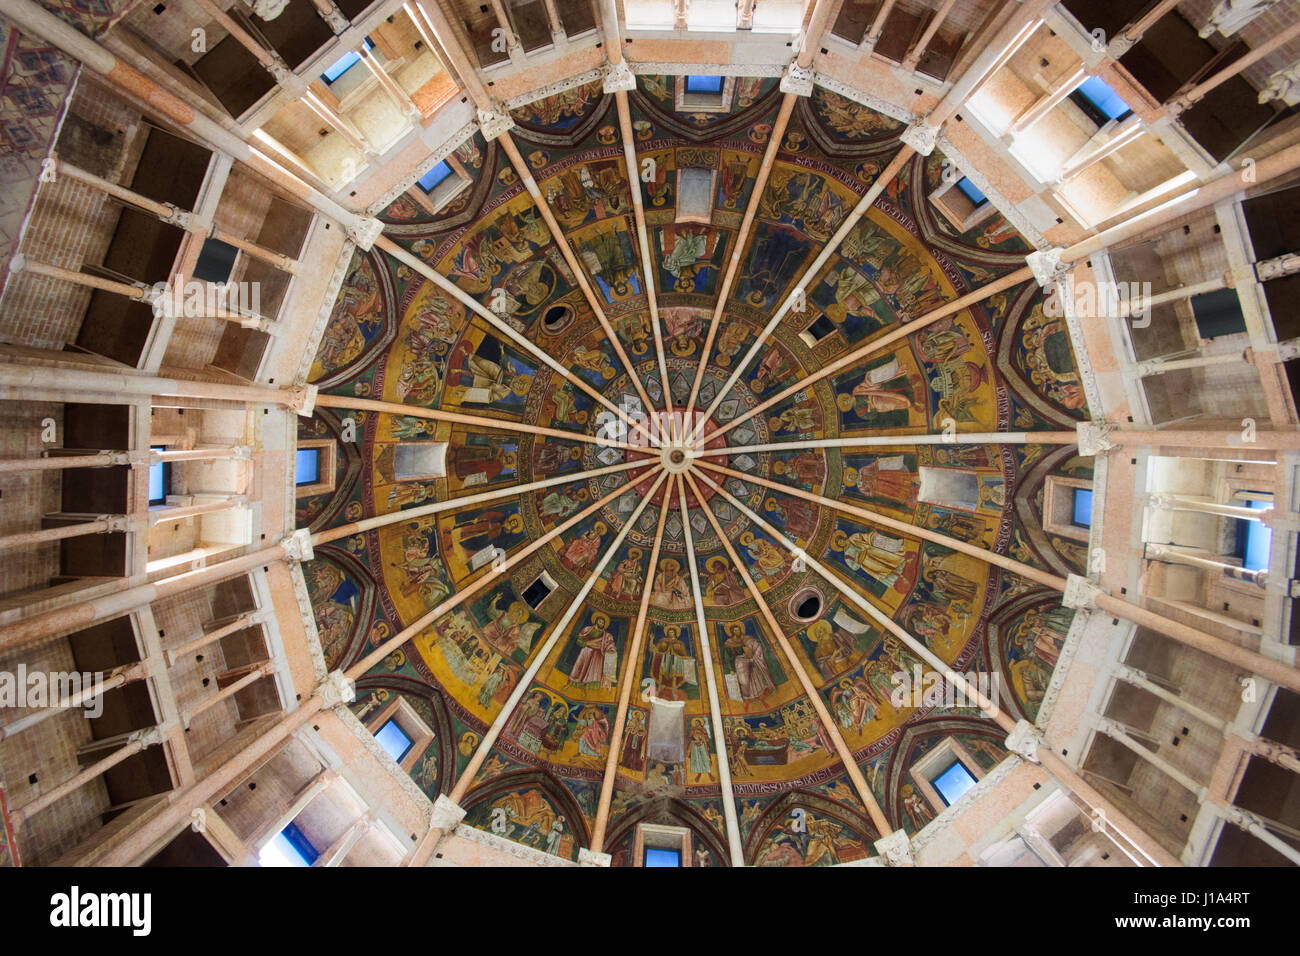 PARMA, Italien - 22. Januar 2015: Das Deckenfresko in der Taufkapelle von Parma, Emilia-Romagna, Italien Stockfoto